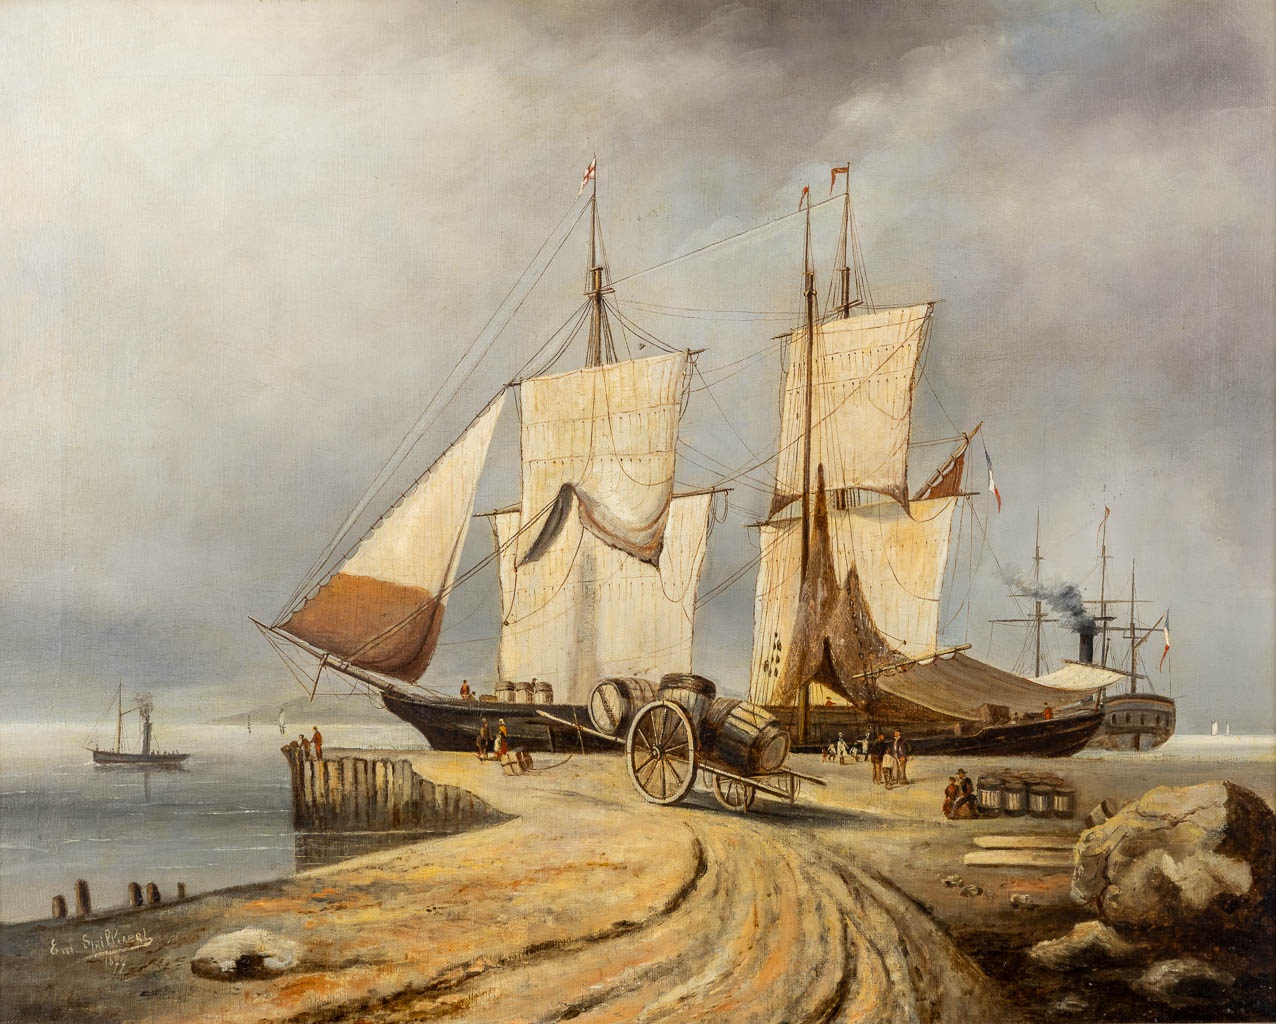  Emile SPILLIAERT (1858-1913) 'Ships at the dock' 1877